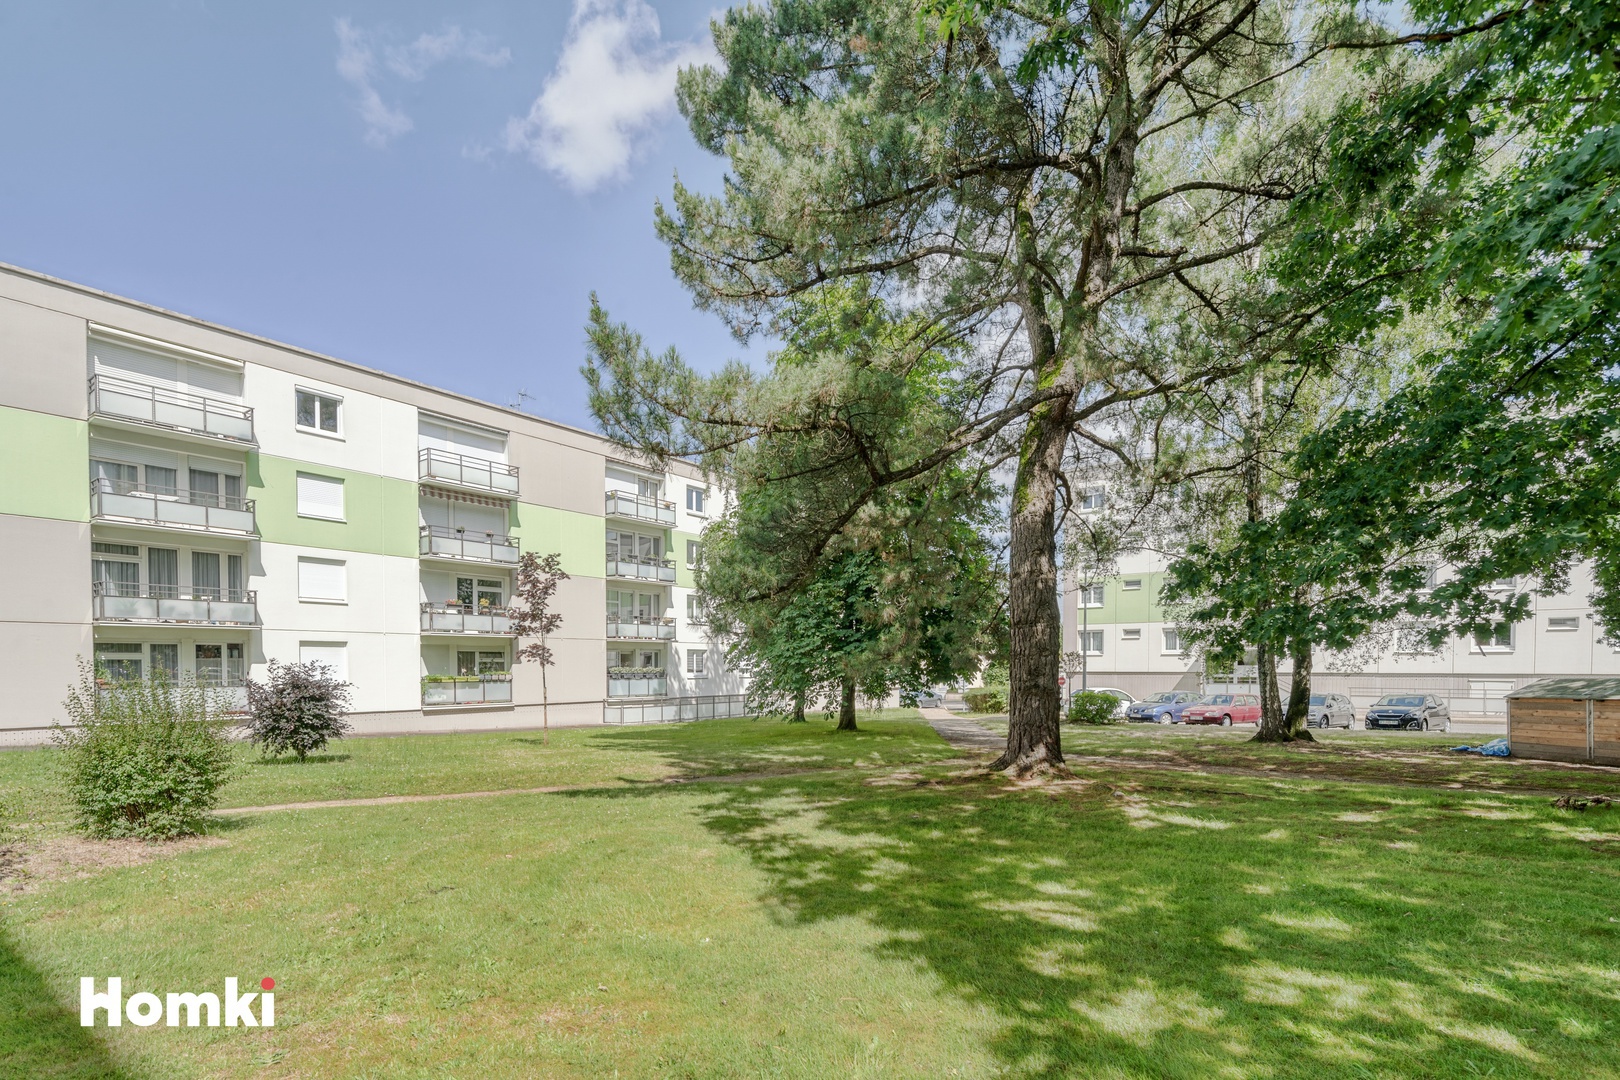 Homki - Vente Appartement  de 73.0 m² à Orvault 44700